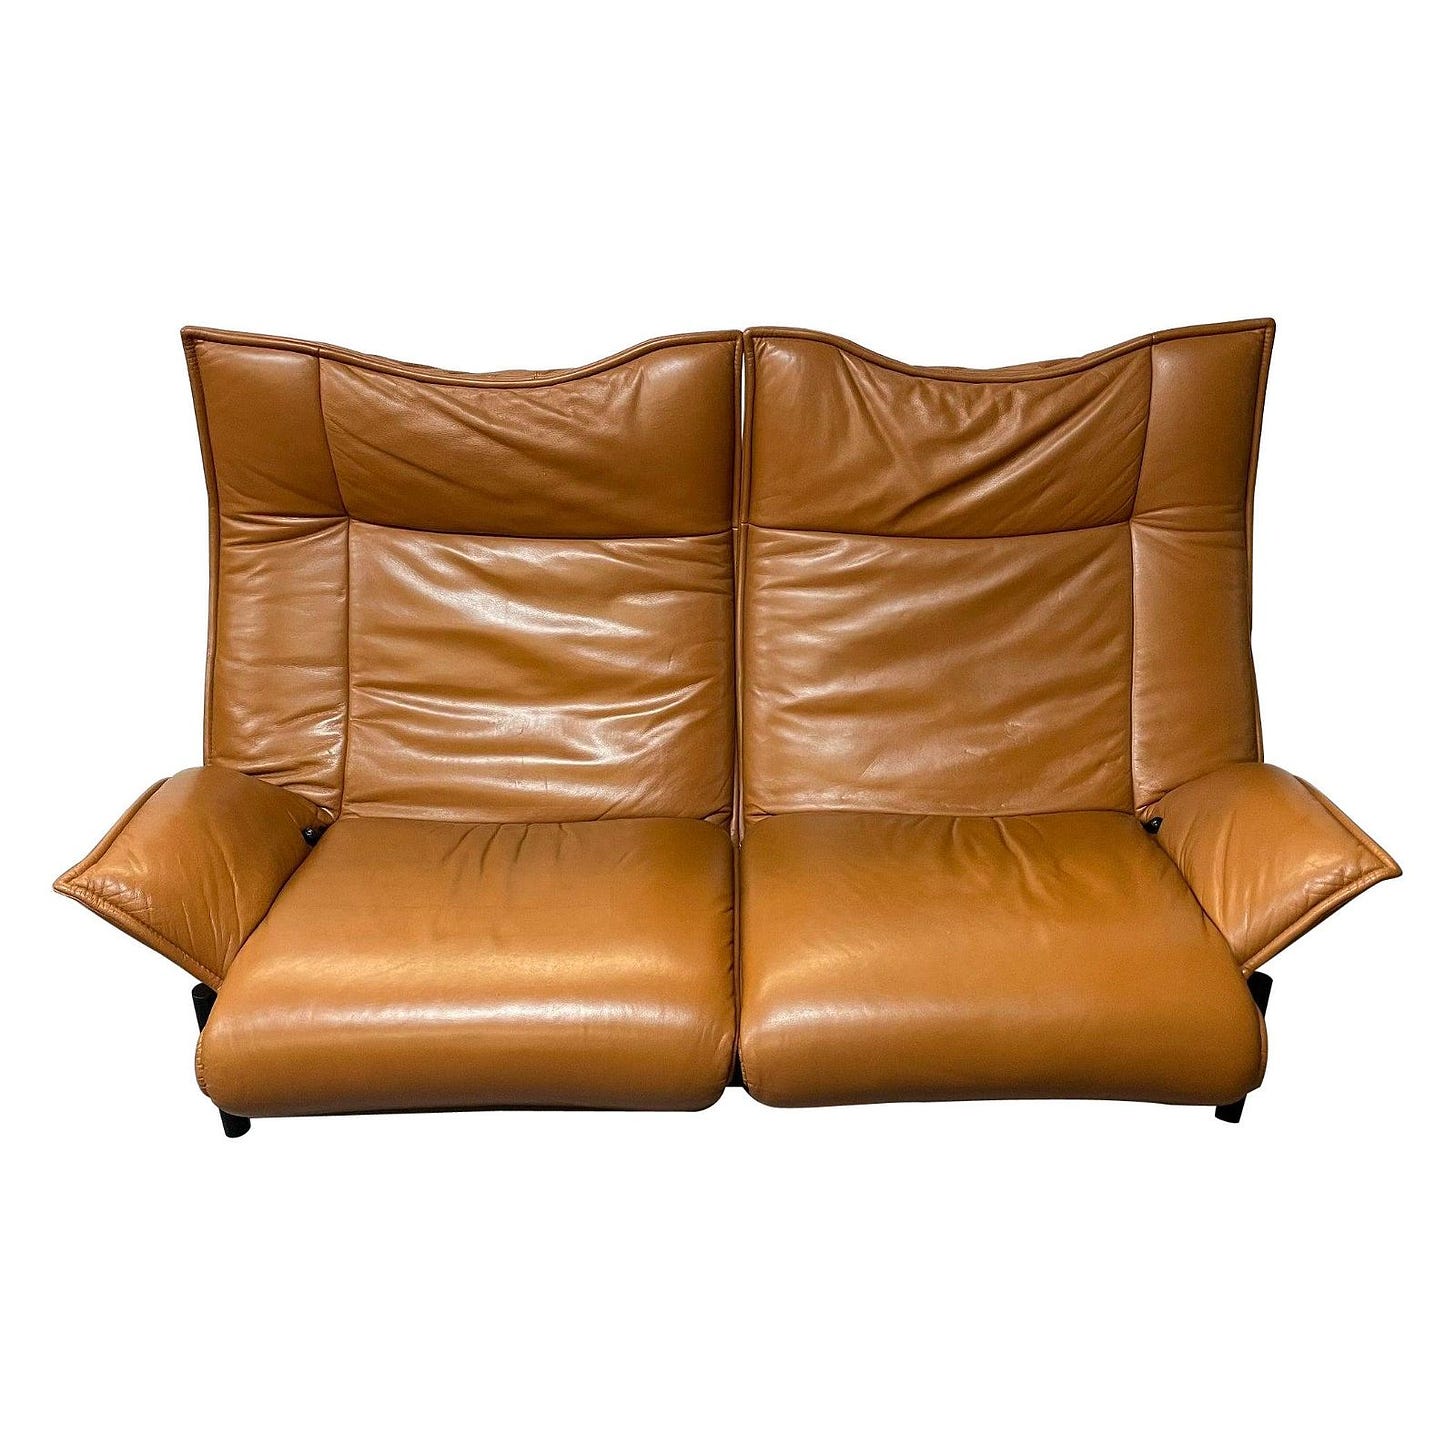 Vico Magistretti for Cassina Veranda Sofa, Two-Seater, Leather, Italian Modern